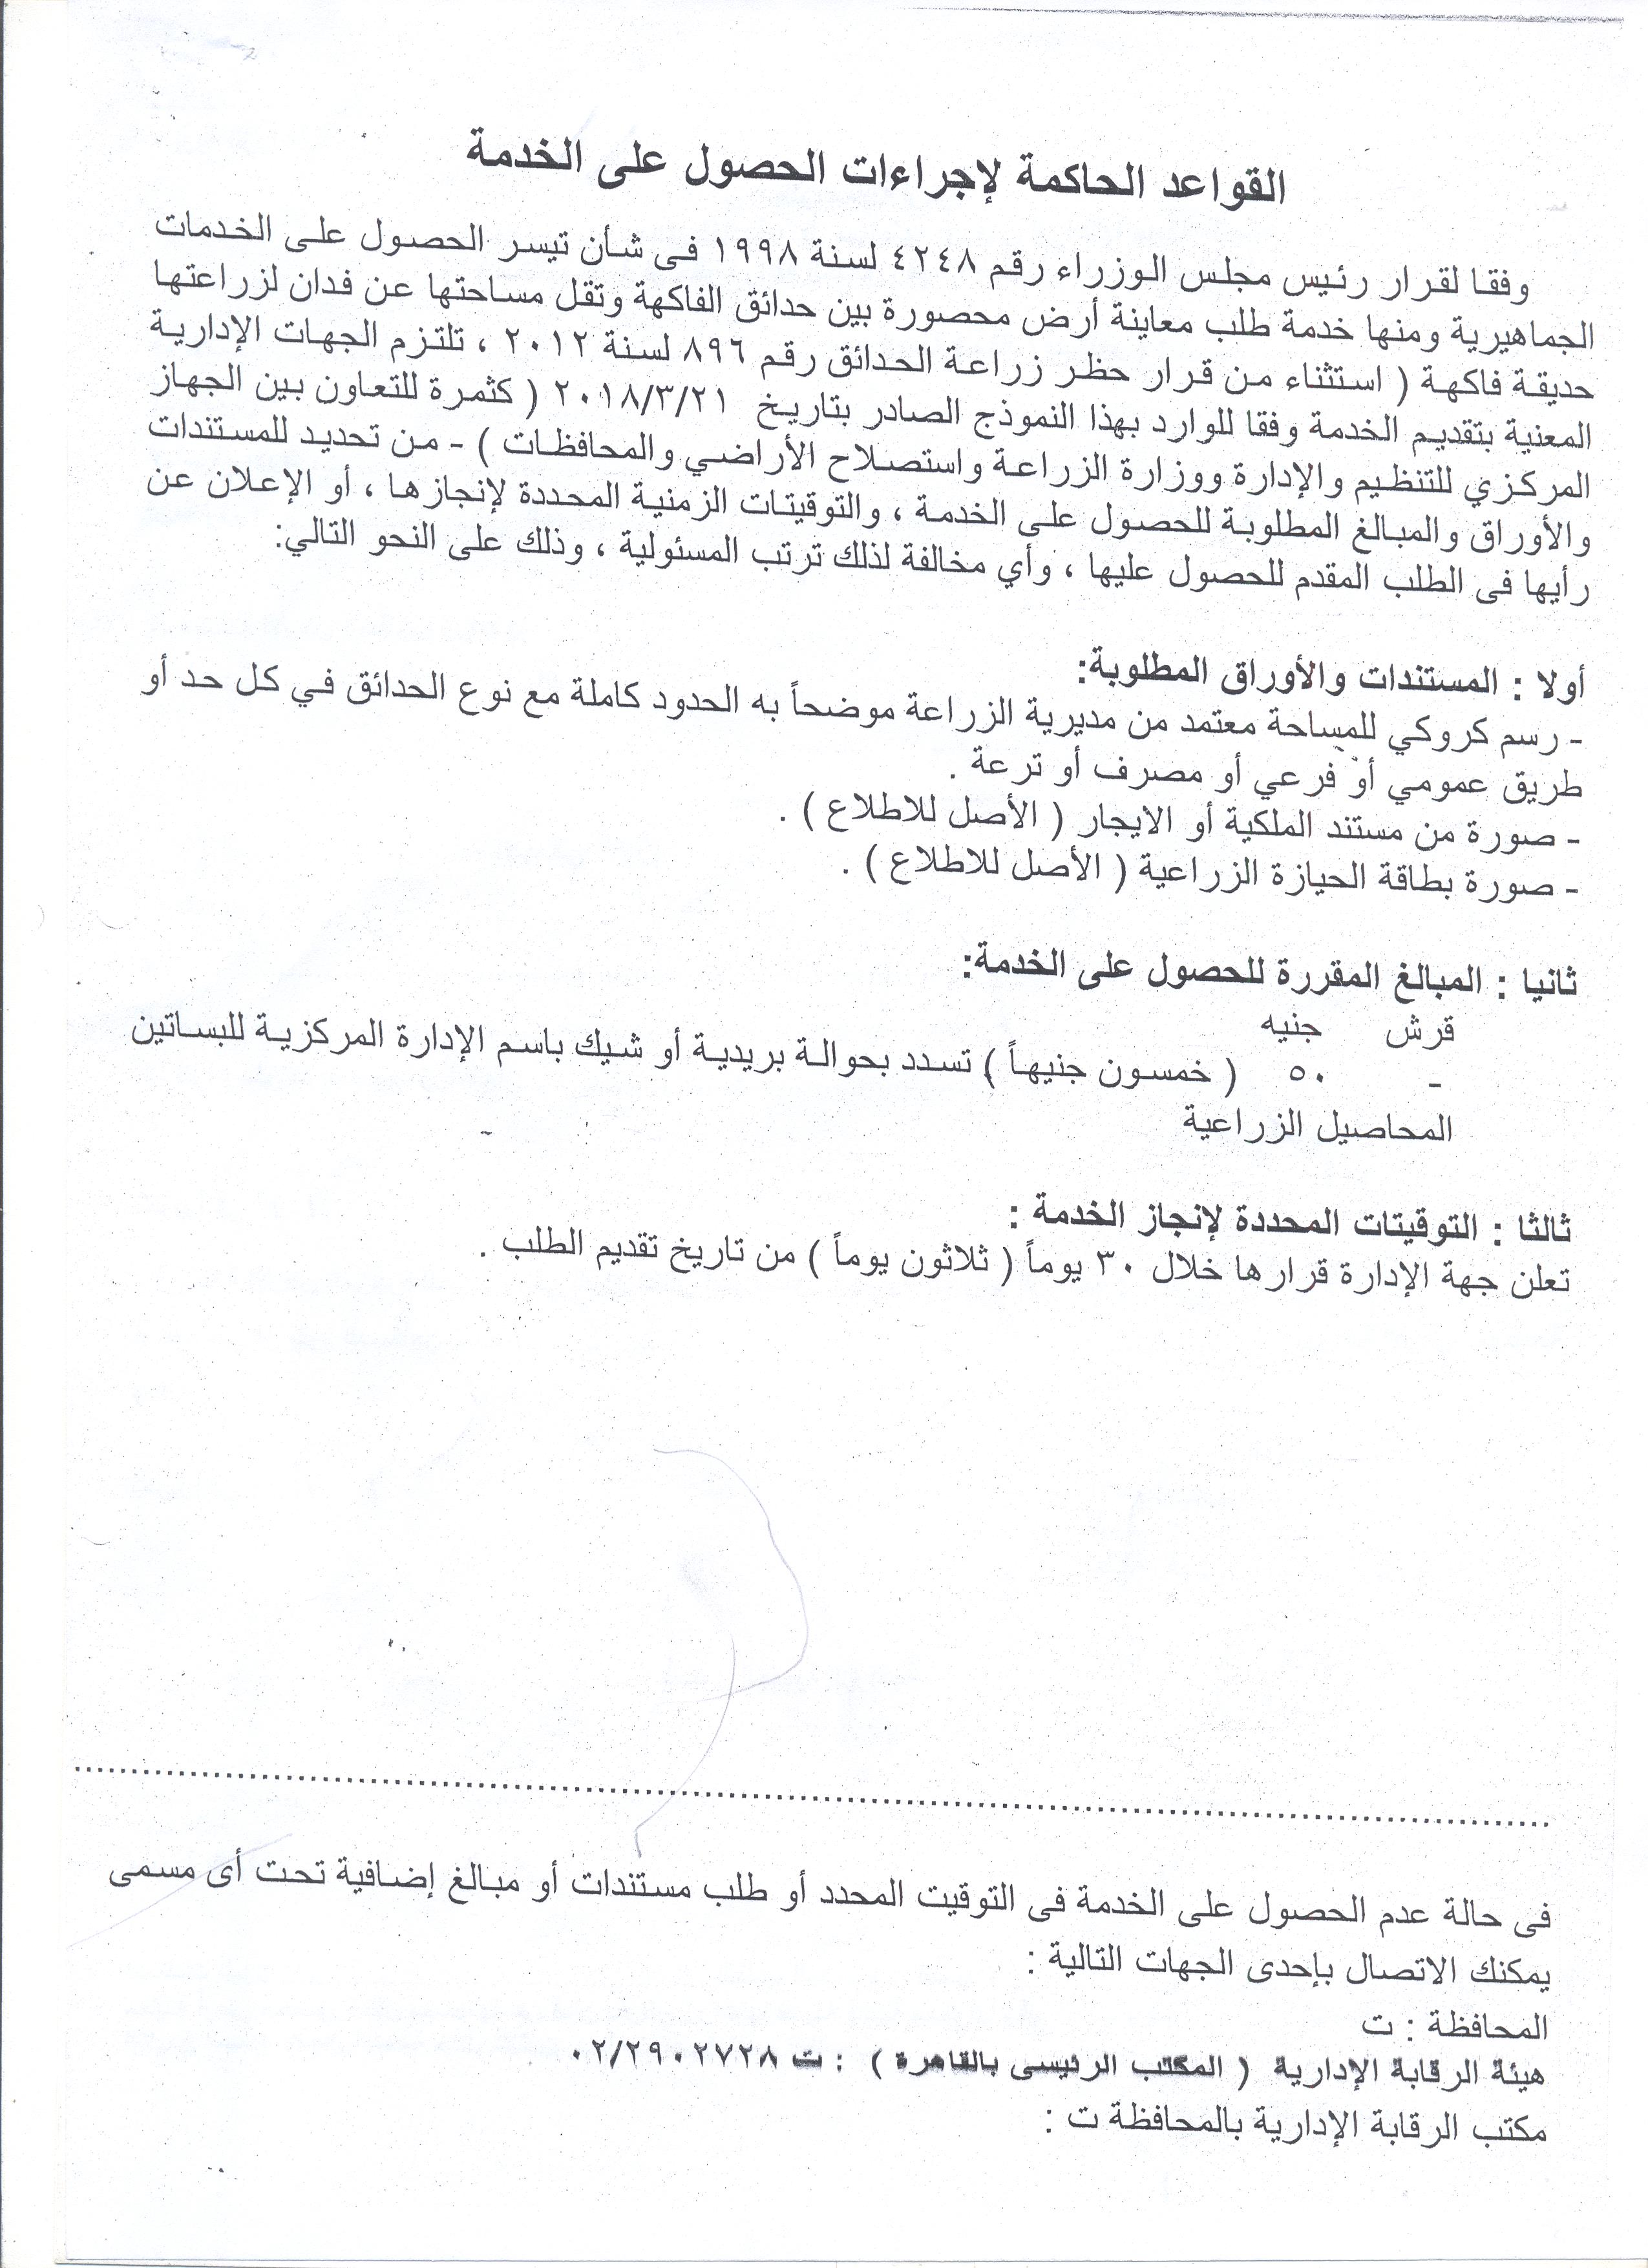 نموذج رسالة رسمية سلطنة عمان